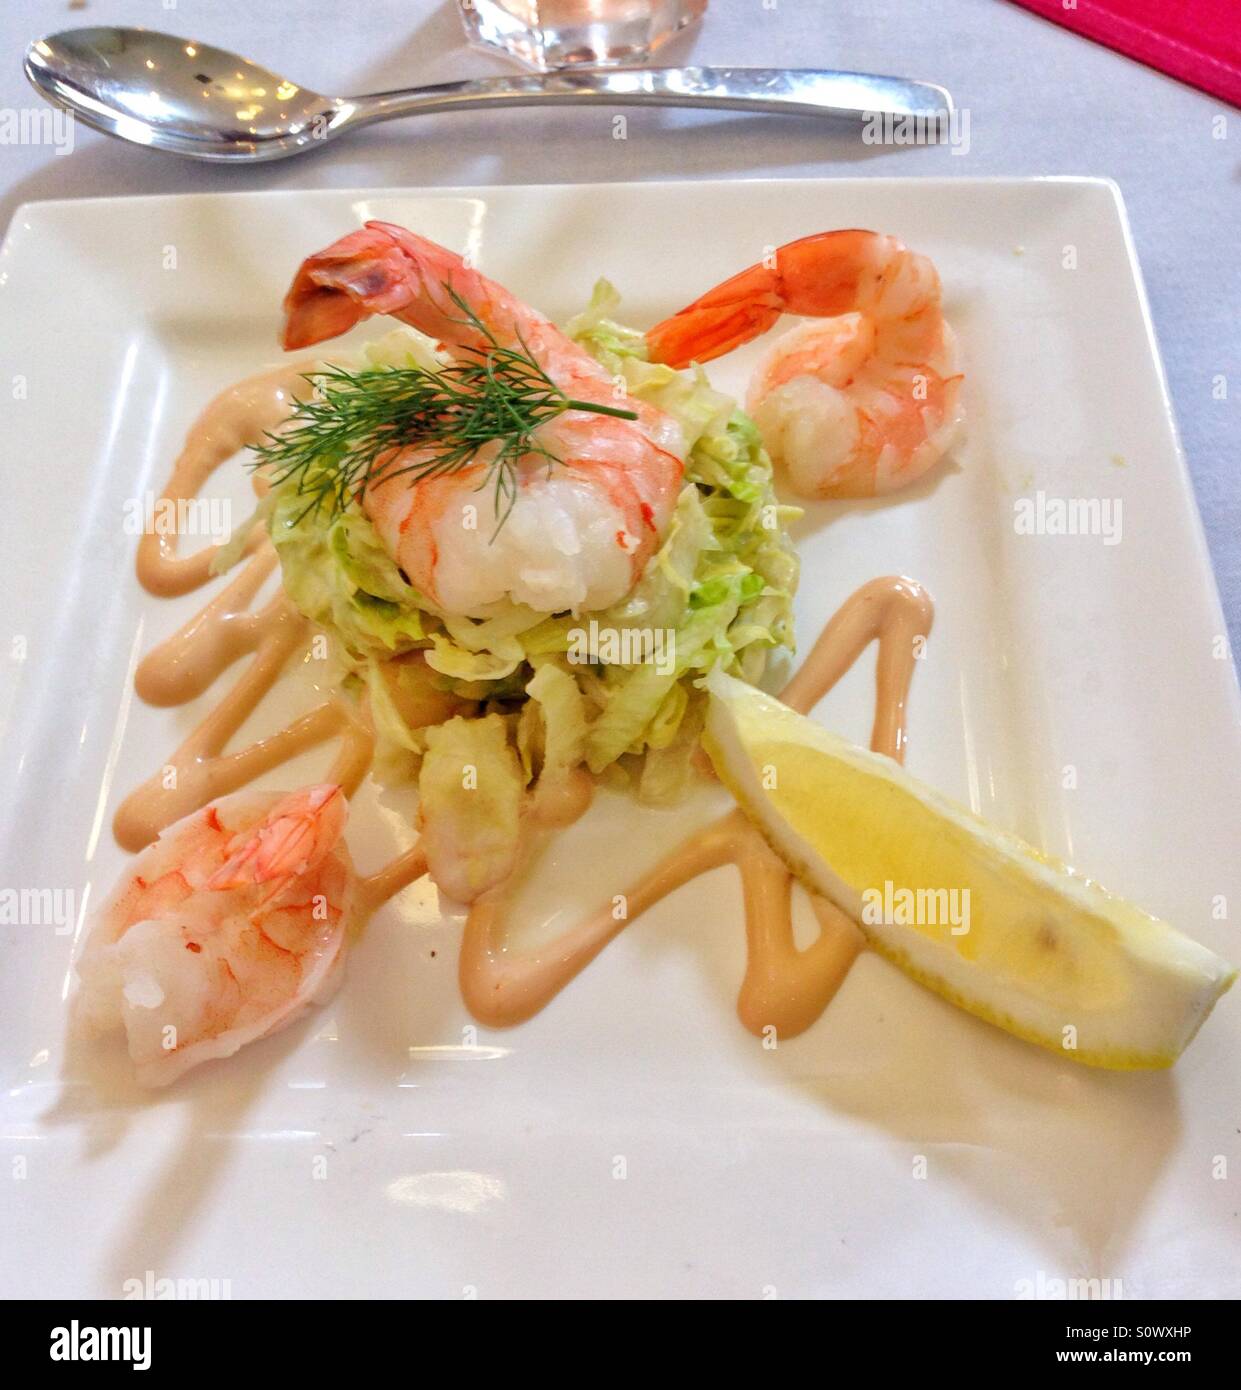 Gourmet seafood dish Stock Photo